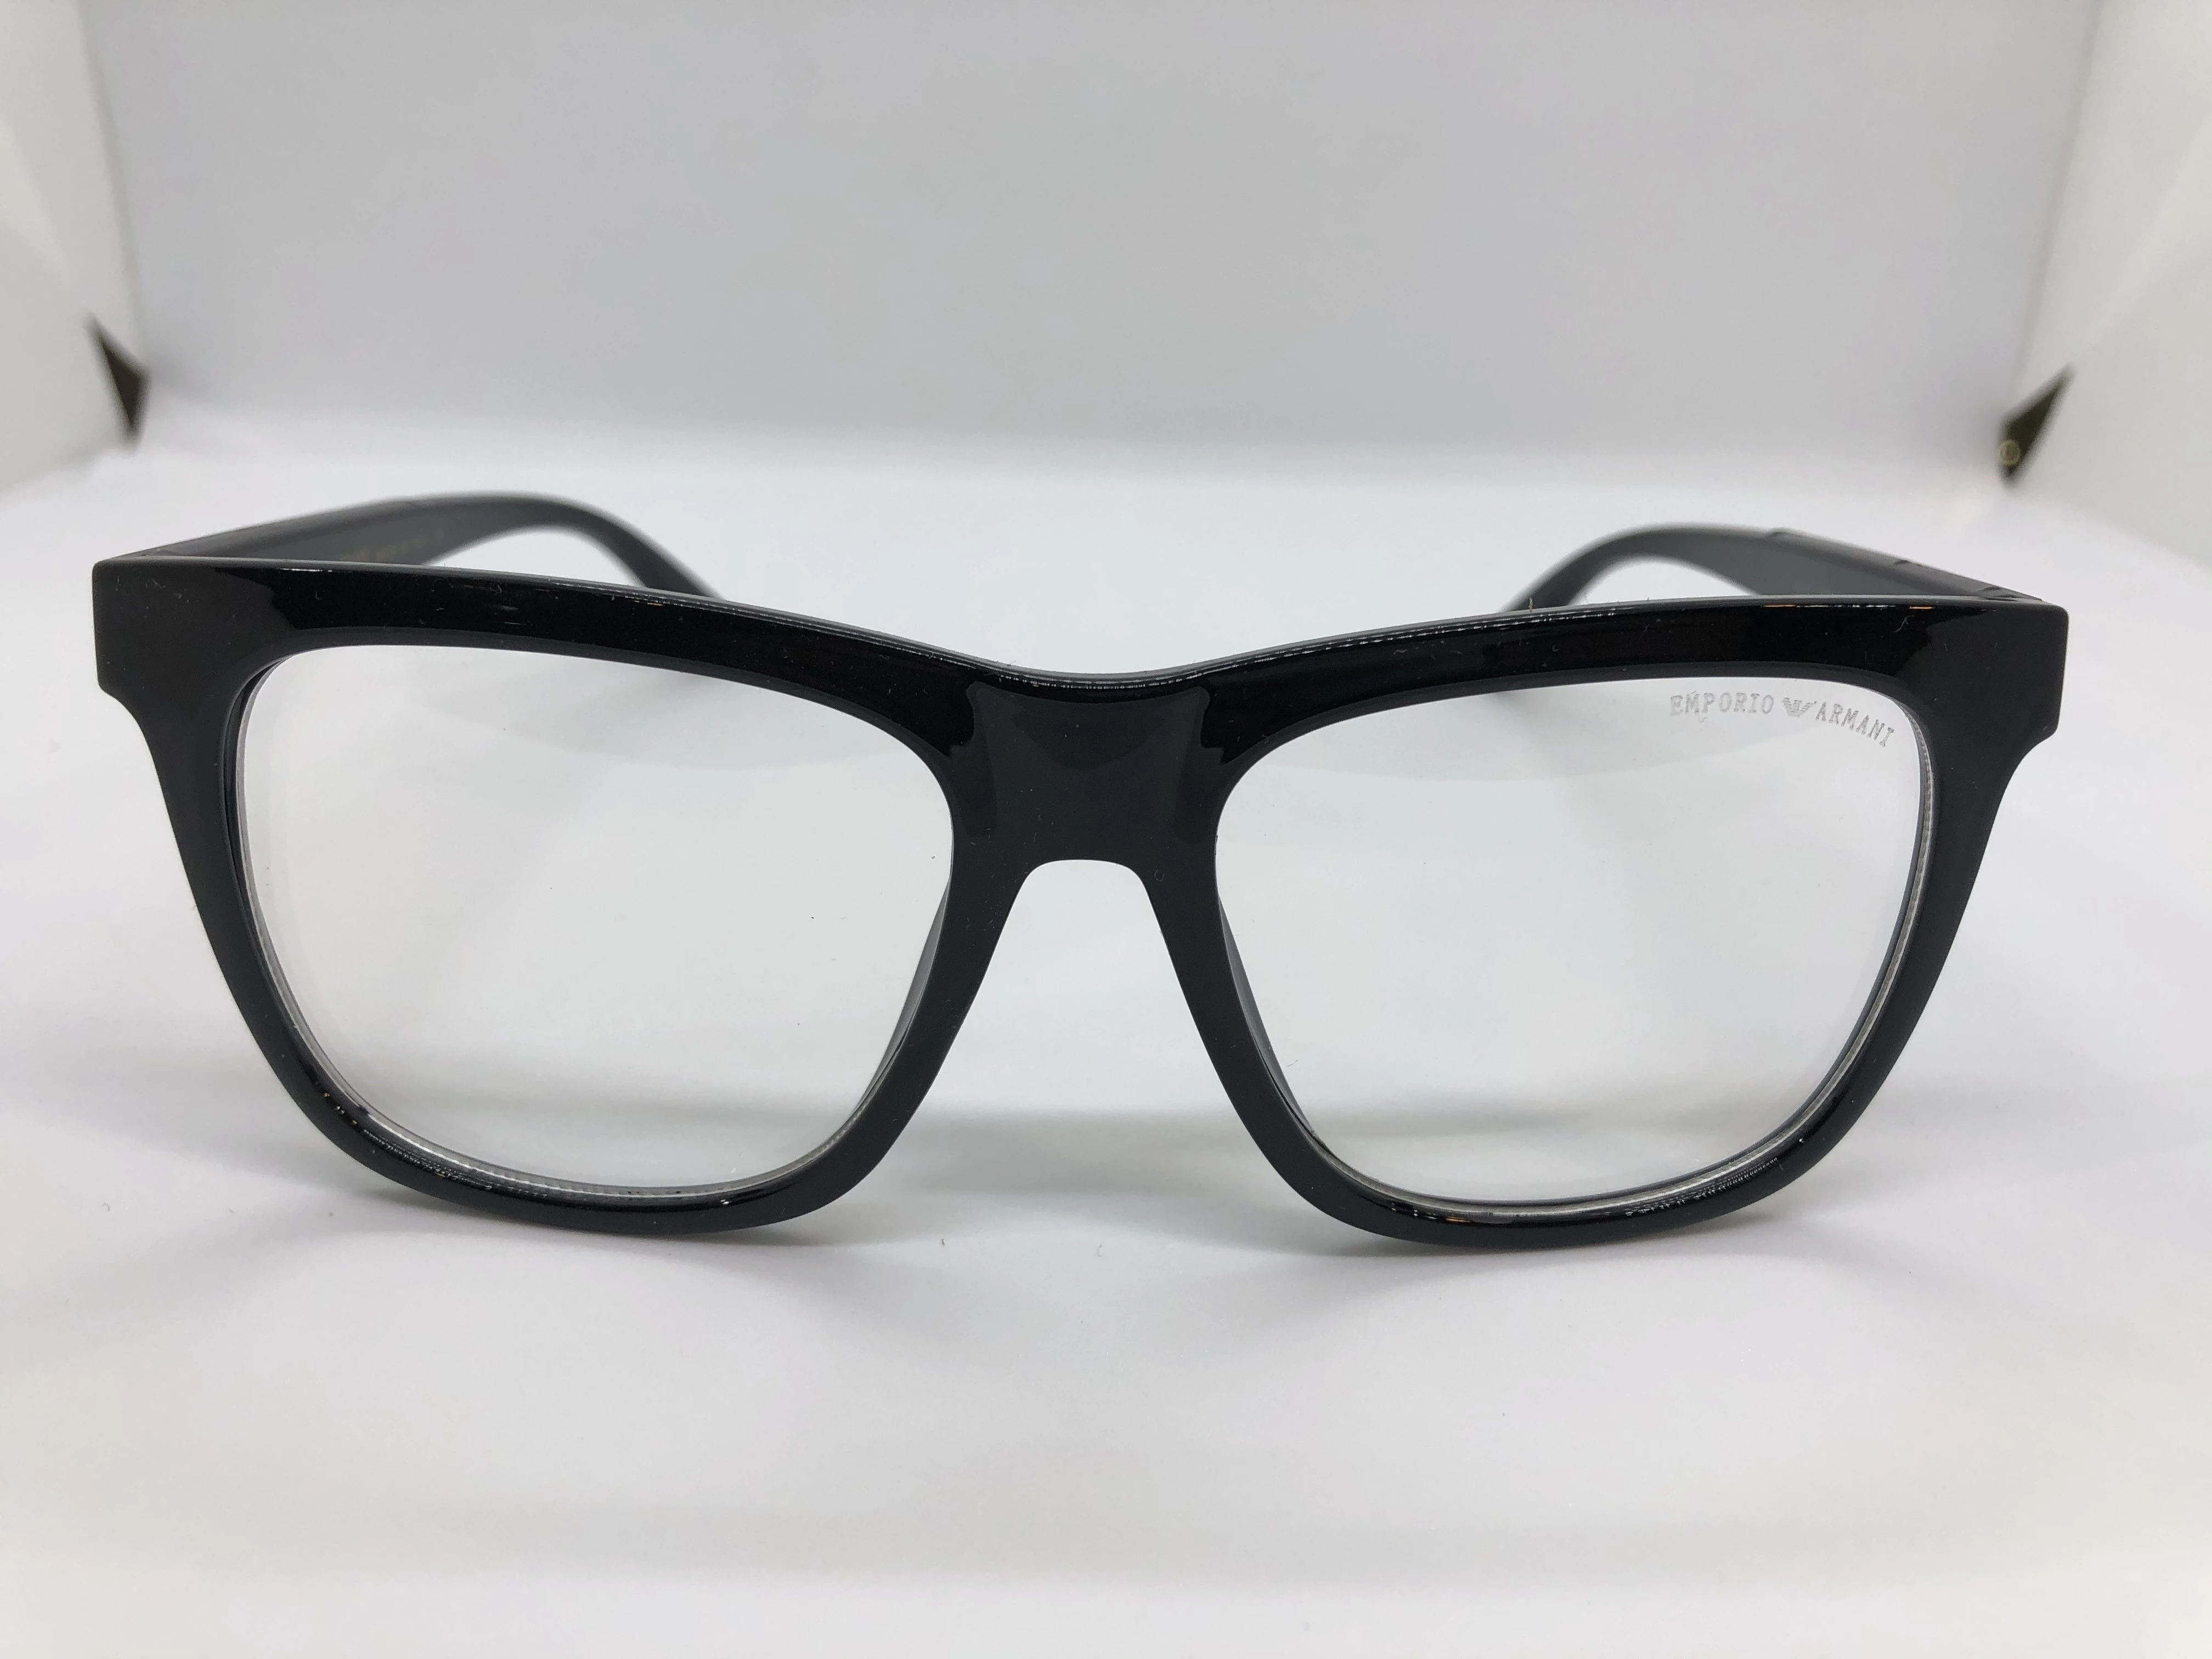 نظارة شمسية امبوريو ارماني- باطار اسود بولي كاربونات - وعدسات شفافة - وزراع اسود بولي كاربونات - رجالي